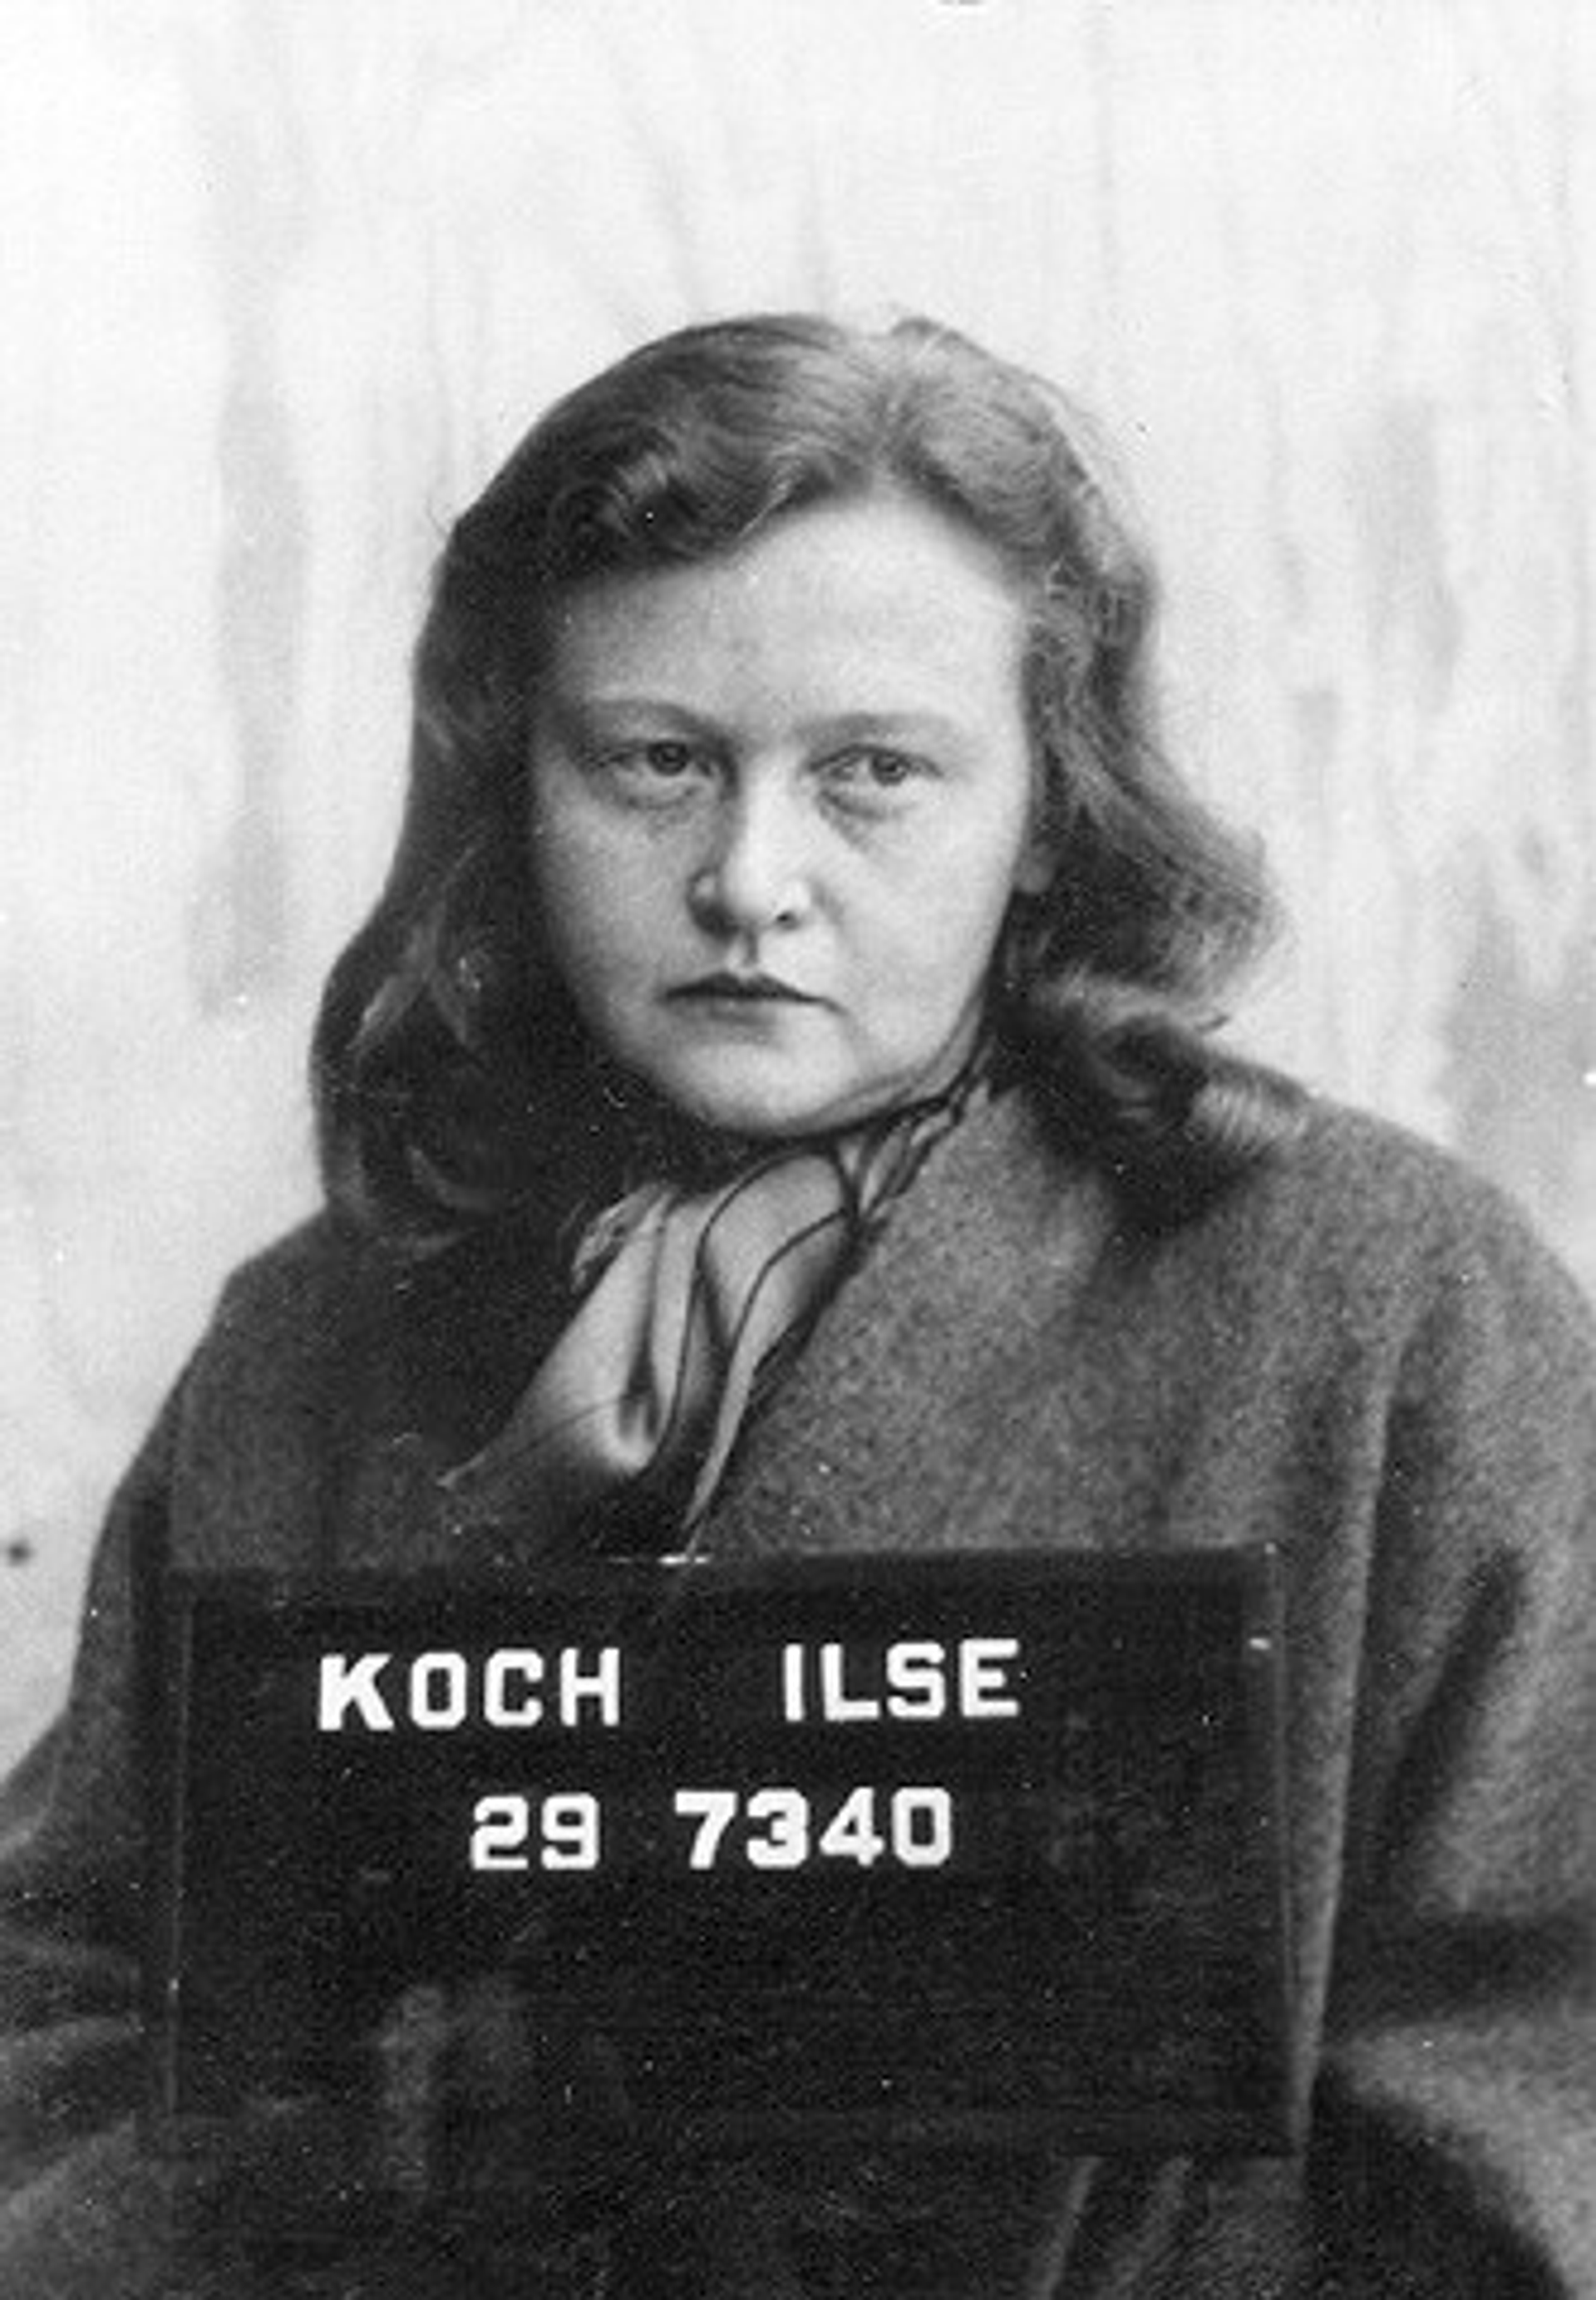 Kako su obične žene postale mučiteljke: Ko su bile čuvarke u nacističkim logorima? /foto/ - Sputnik Srbija, 1920, 29.03.2021